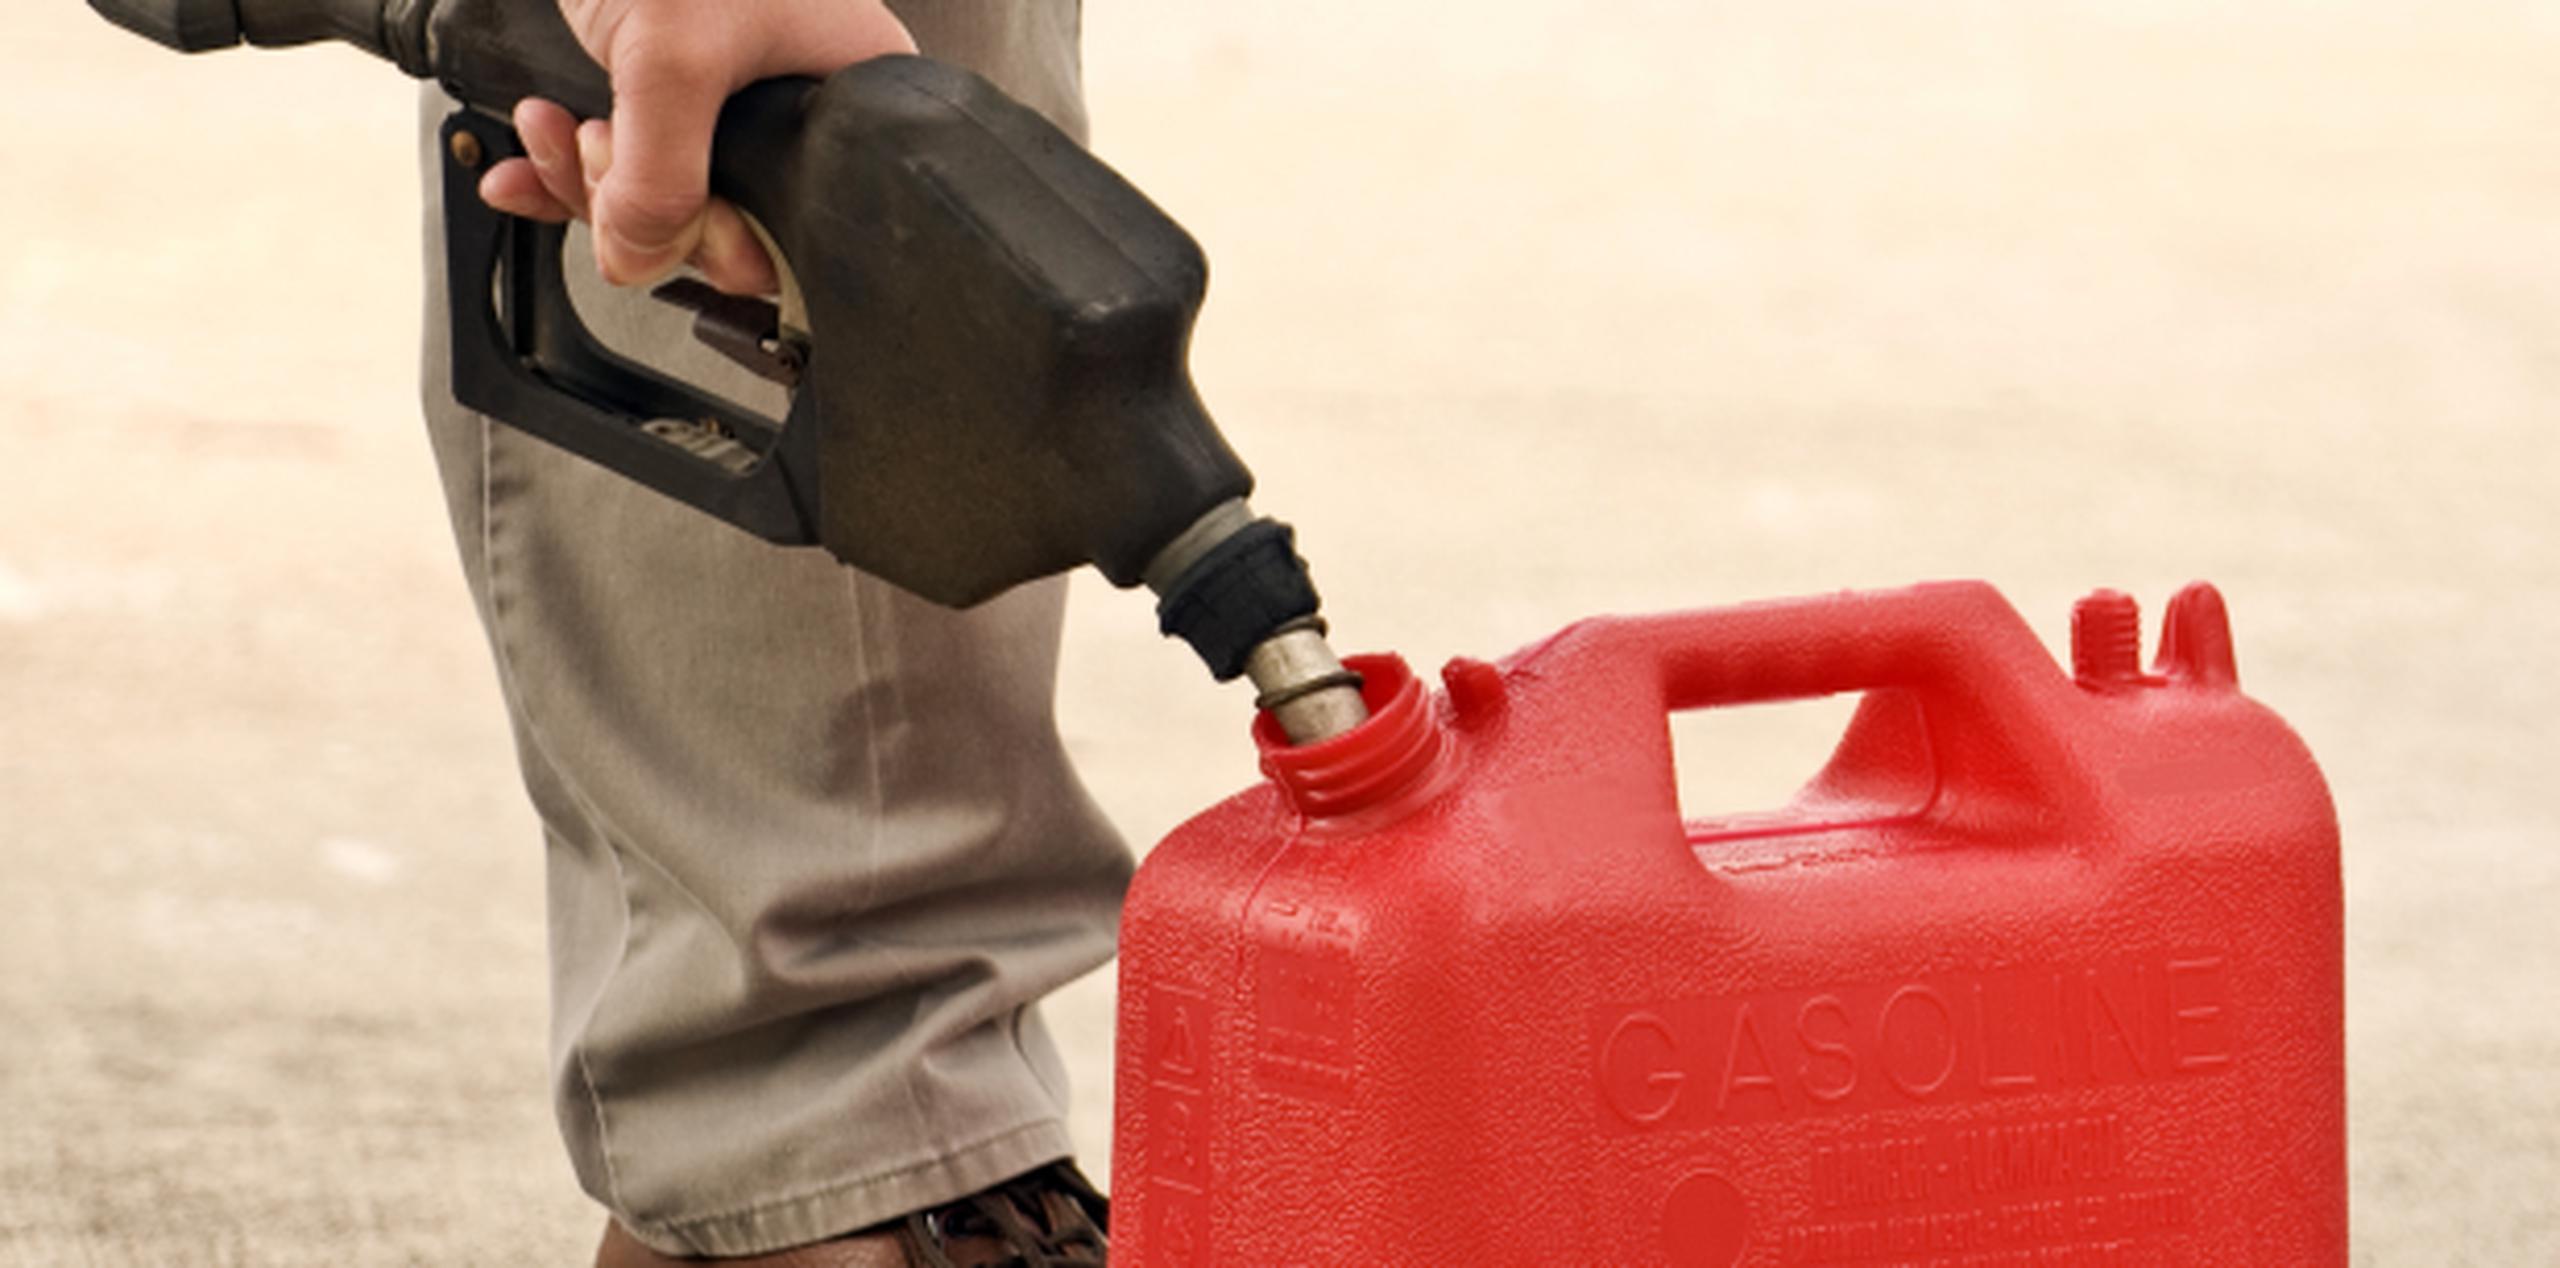 No batas el recipiente cuando hayas depositado gasolina. (Shutterstock)